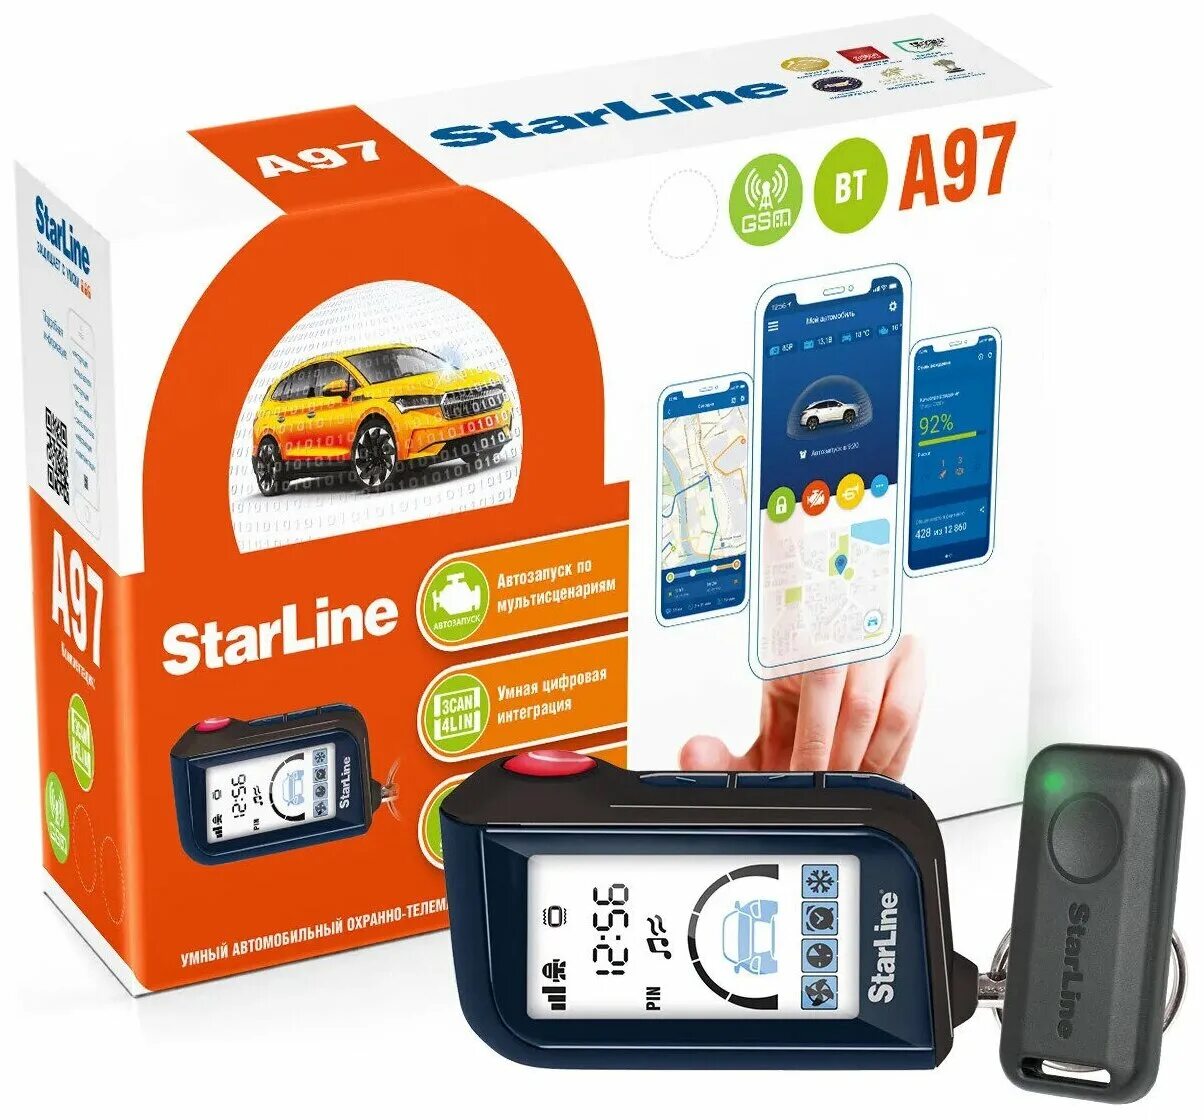 Старлайн с gsm модулем и автозапуском. Сигнализация STARLINE a97 BT GSM. STARLINE a97 GSM/GPS. STARLINE a96 охранно-телематический комплекс. B97 STARLINE LTE GSM.